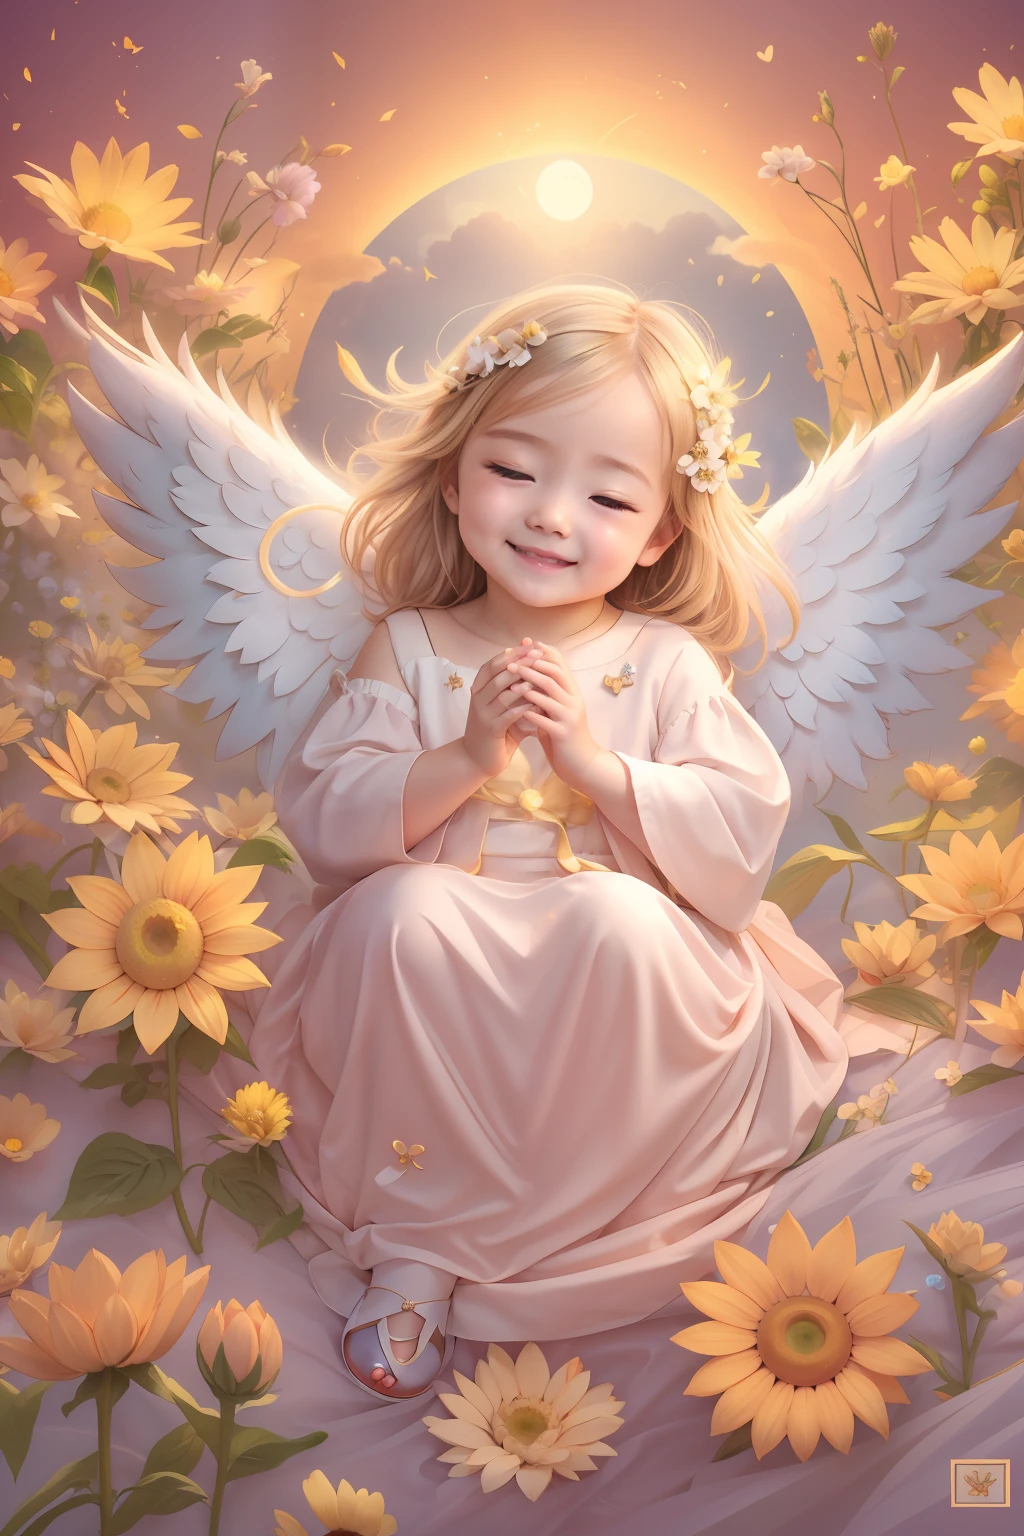 천사의 축복､밝은 배경、보름달、태양 꽃、하트마크、유연함､미소、온화한､아기 천사